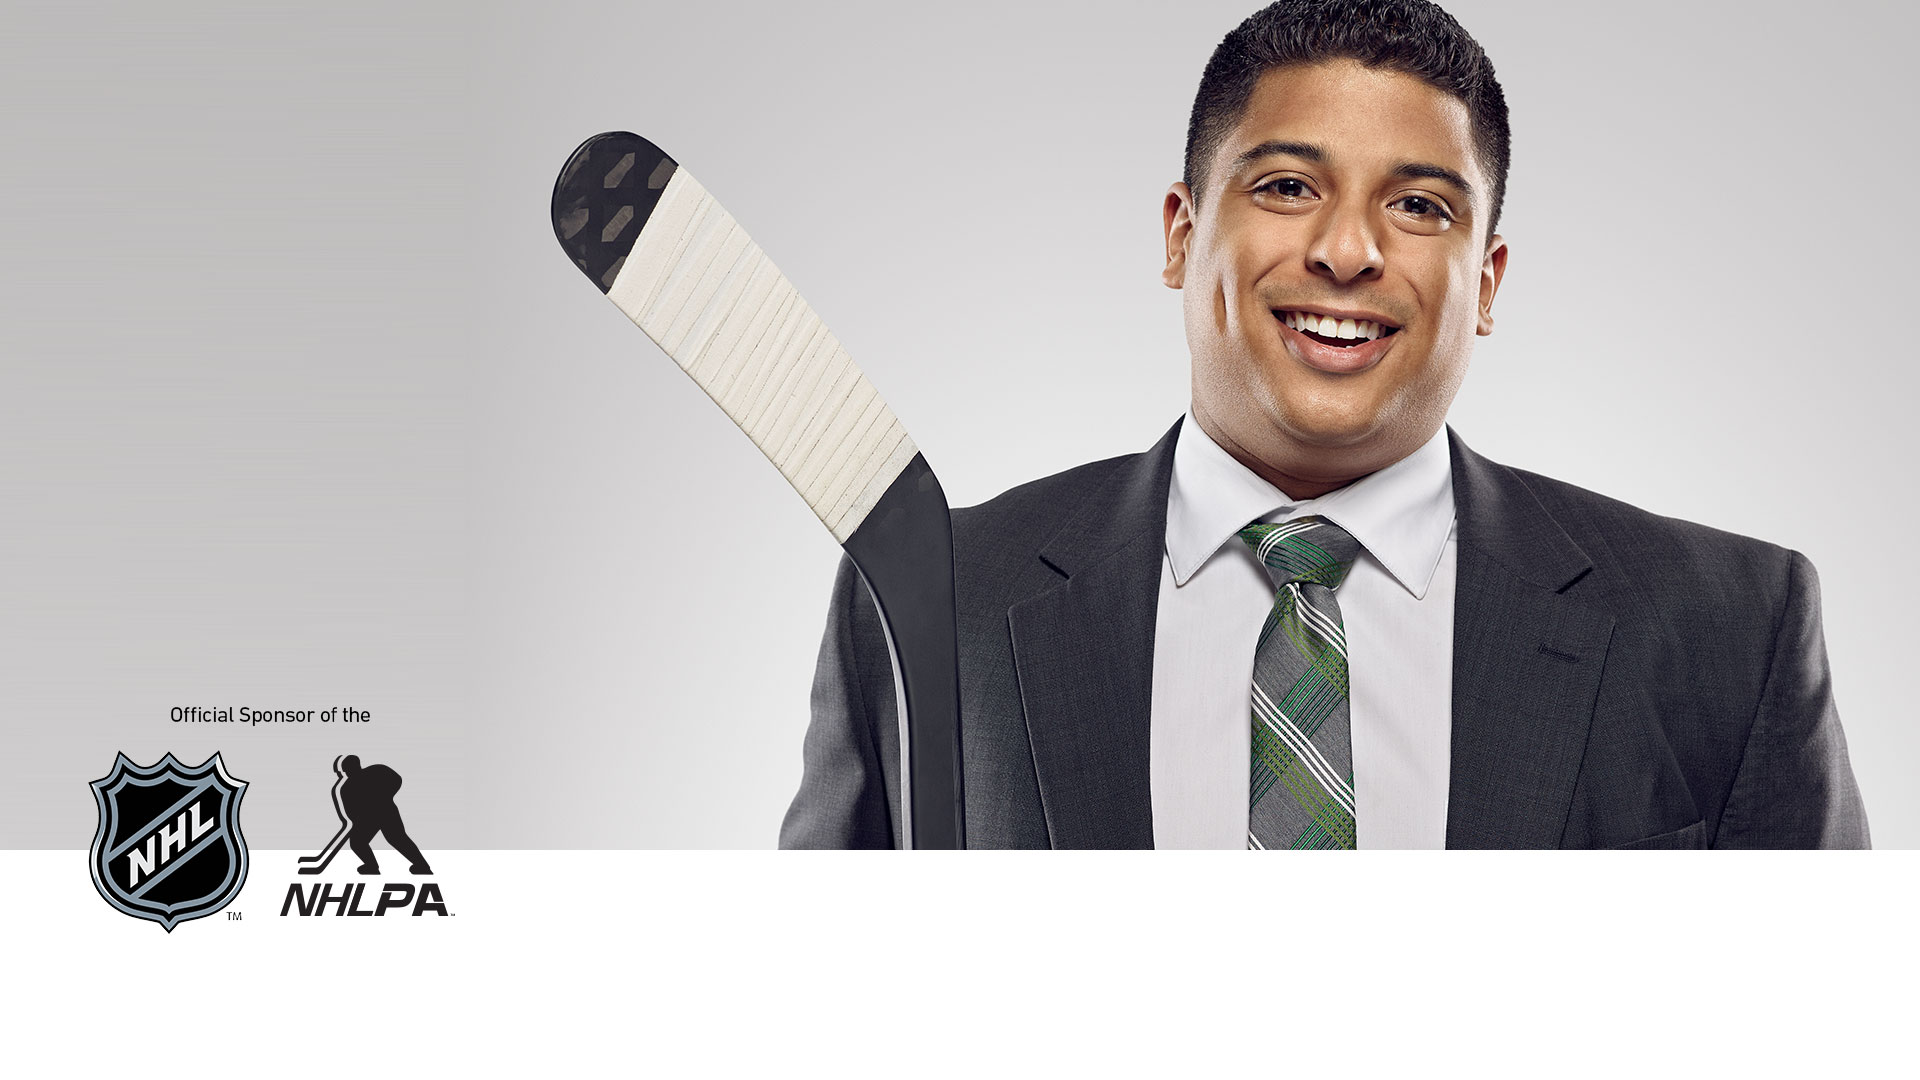 NHL, NHLPA extends longstanding Enterprise sponsorship